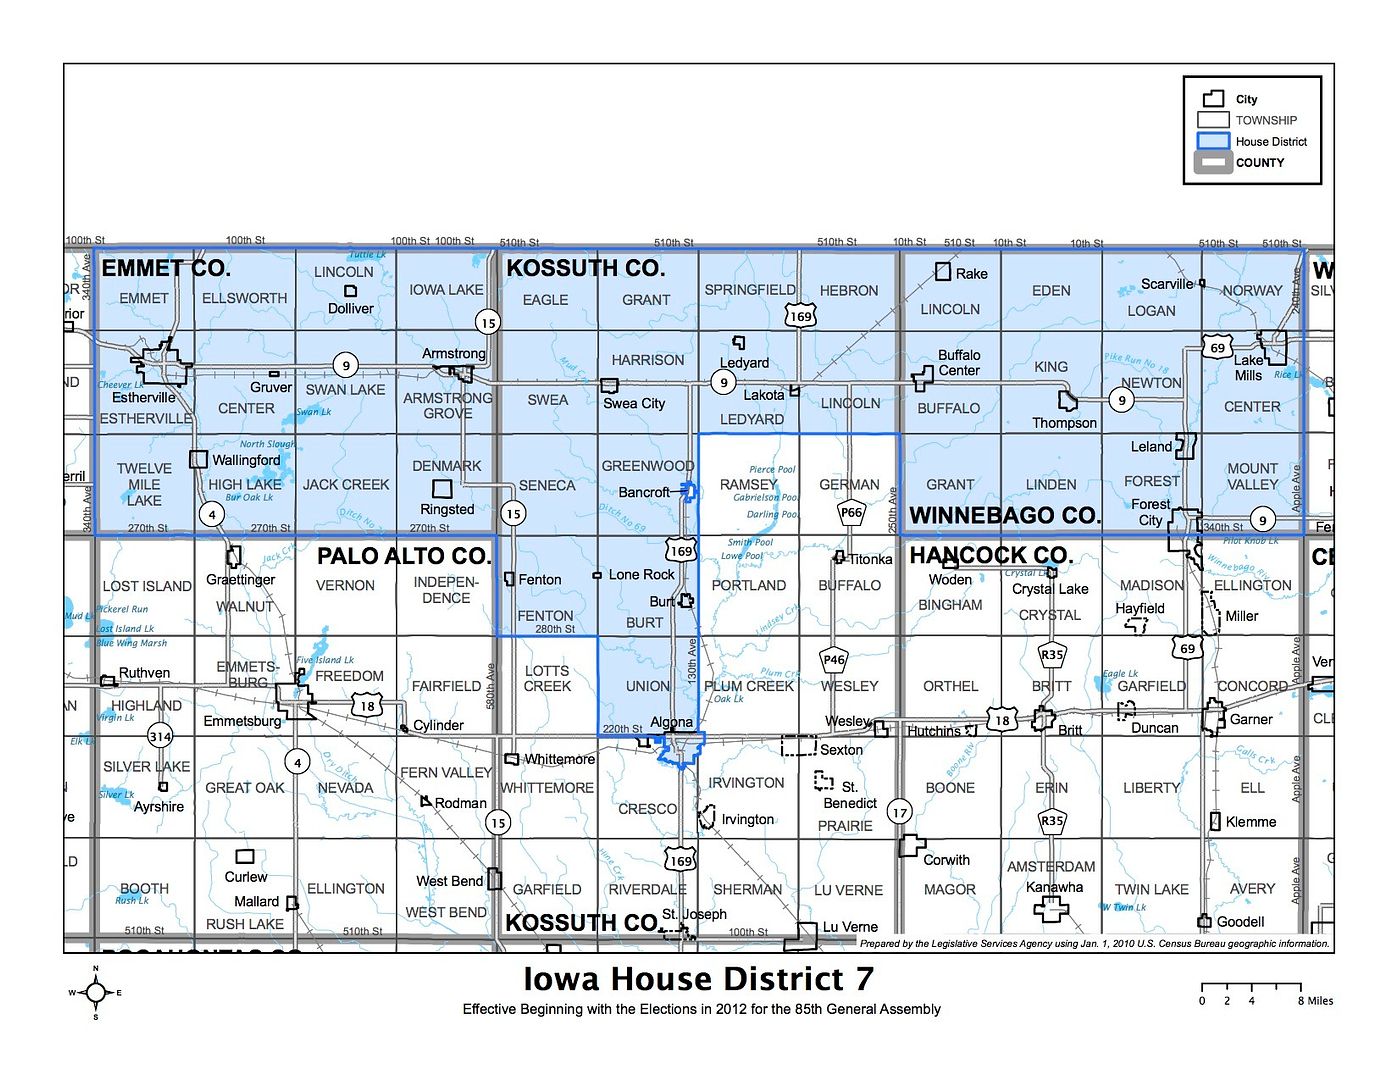 Iowa House district 7 photo IowaHD07_zpsjo5zwepw.jpg